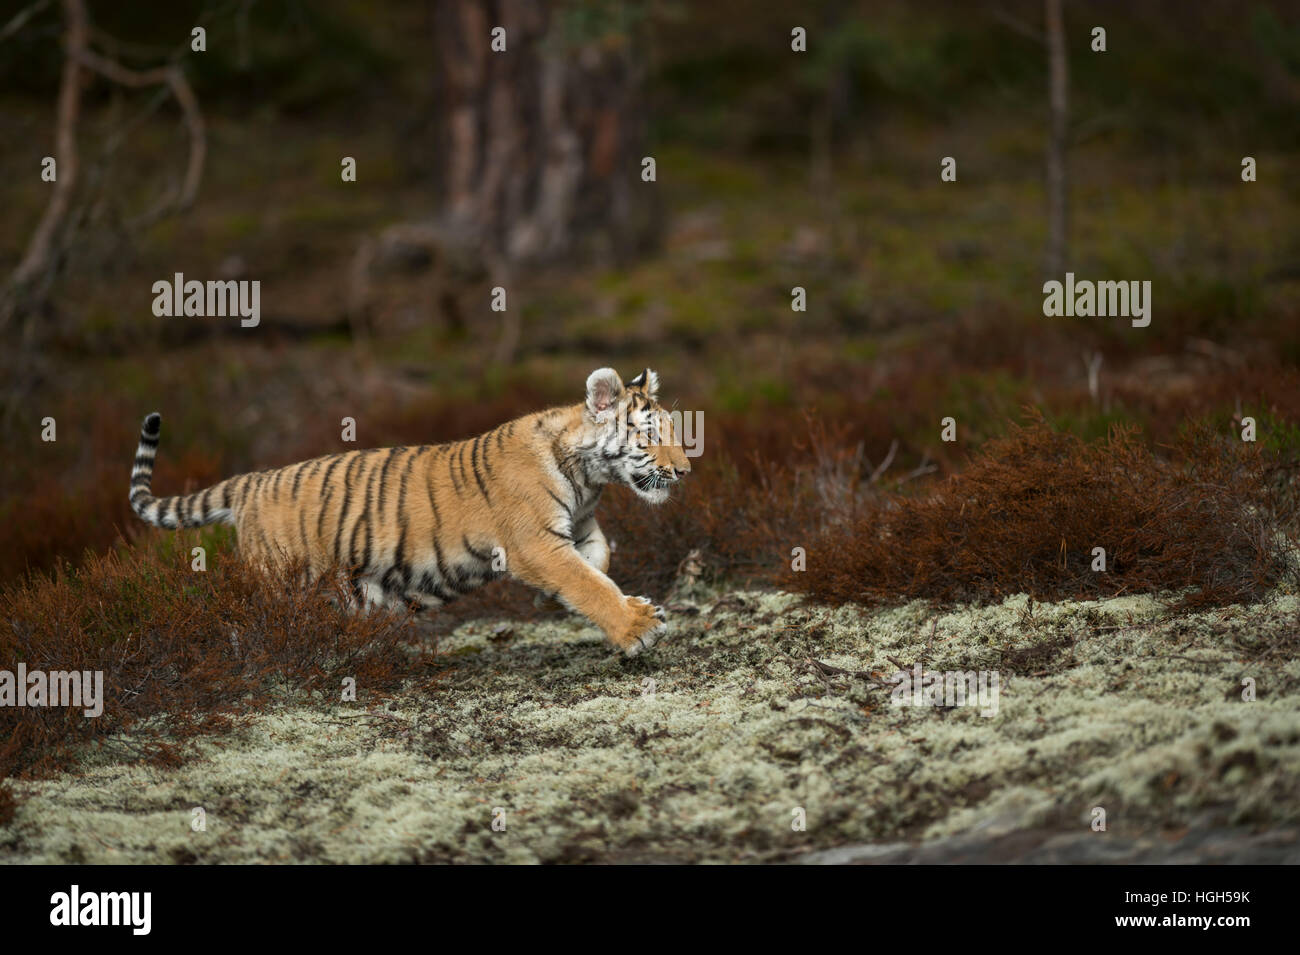 Royal Bengal Tiger/koenigstiger (Panthera tigris), durch das Unterholz, Springen, vorbei an einem Clearing, in Eile. Stockfoto